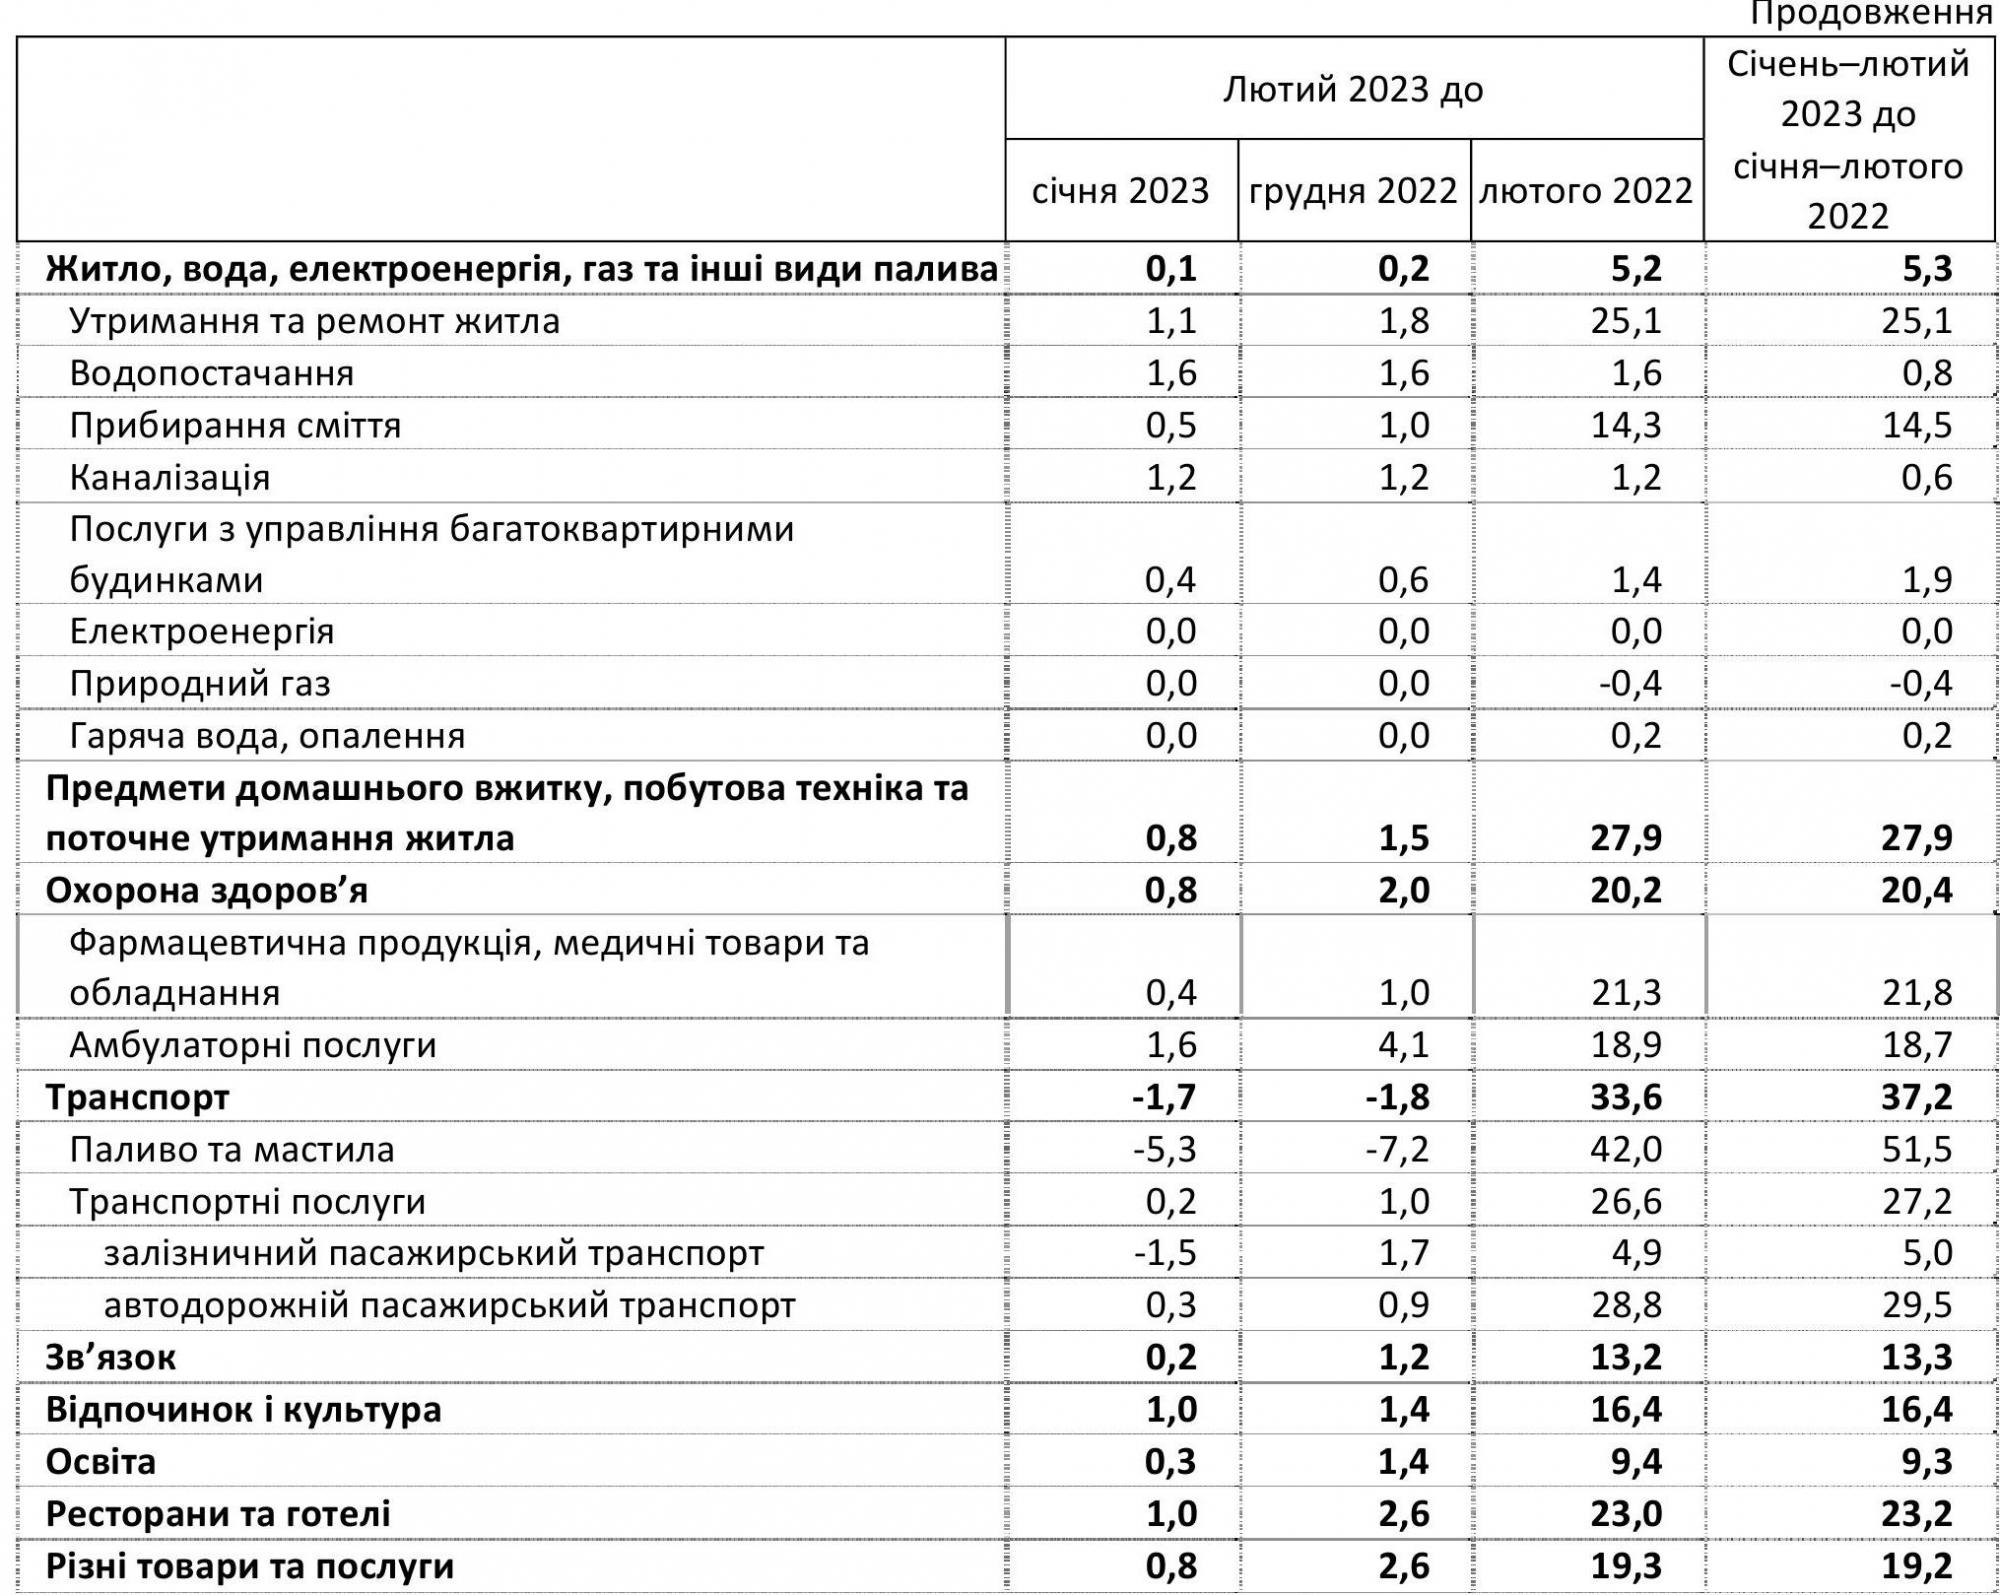 Інфляція в Україні сповільнилася: як змінилися ціни за останній рік